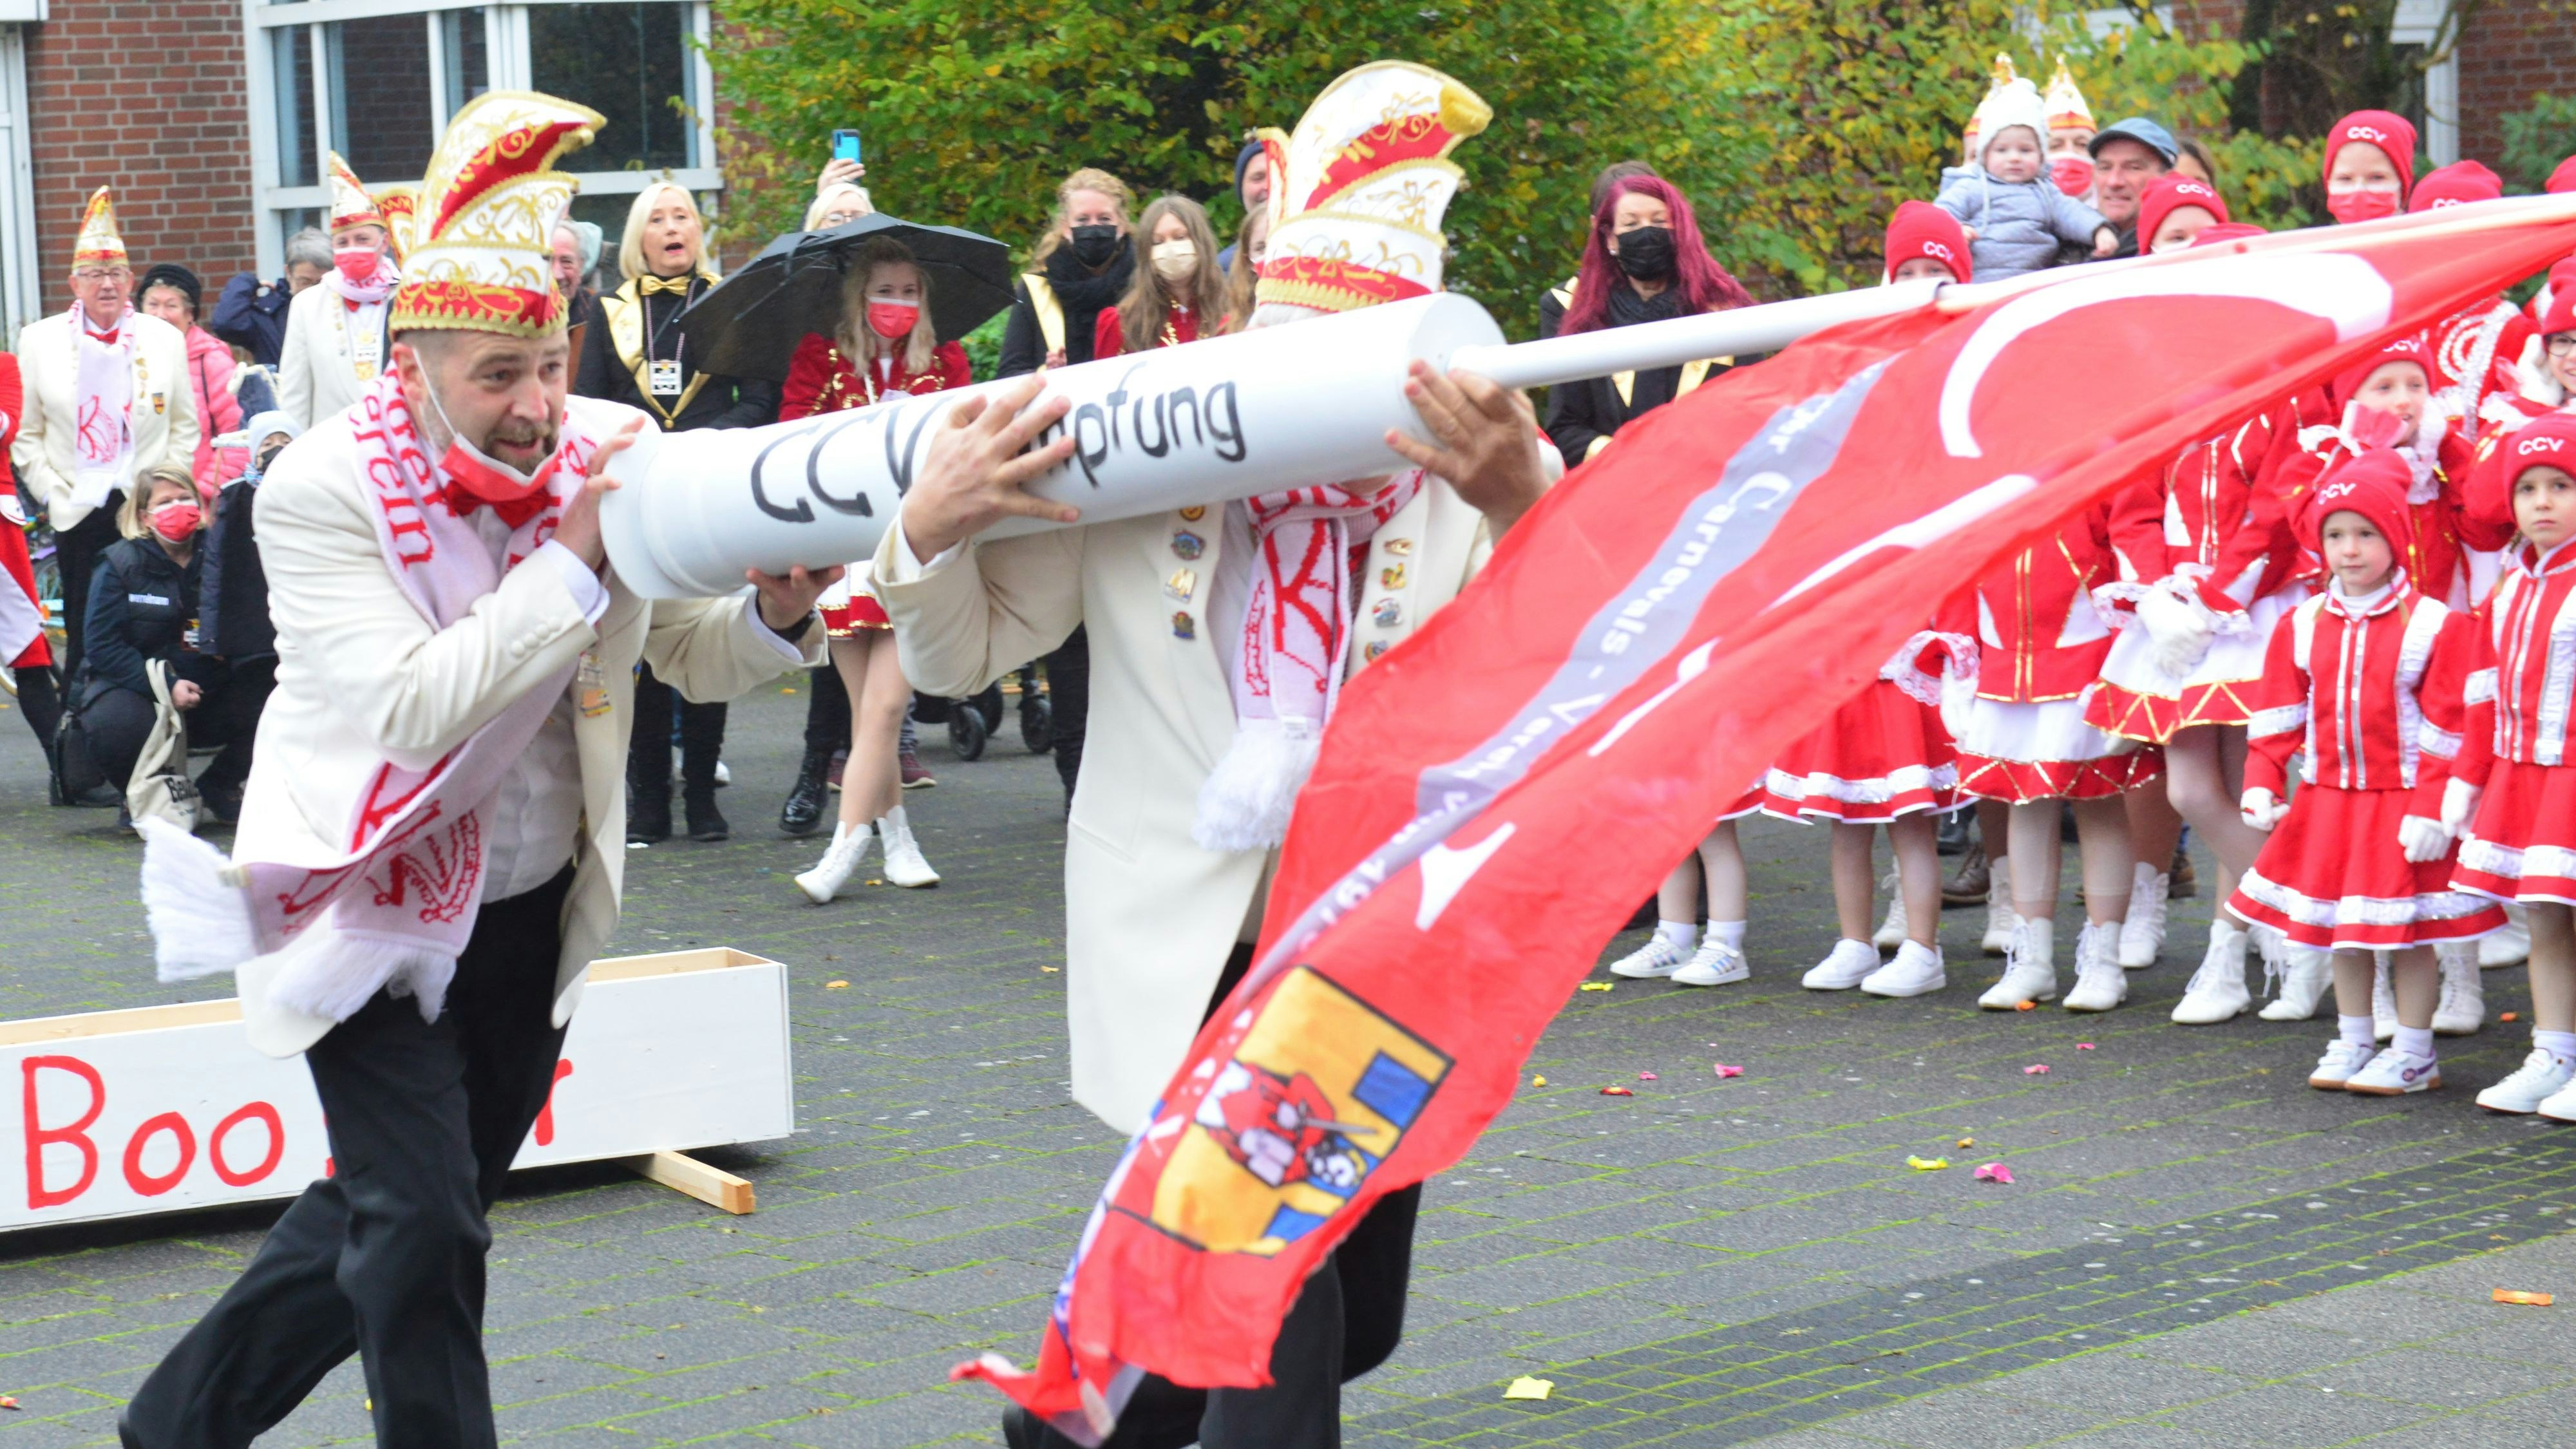 Überdimensionale Booster-Spritze: Die Carnevalisten überraschten Bürgermeister Neidhard Varnhorn, der mit seinen Verteidigern keine Abwehr entgegenzusetzen hatte. Foto: Heidkamp